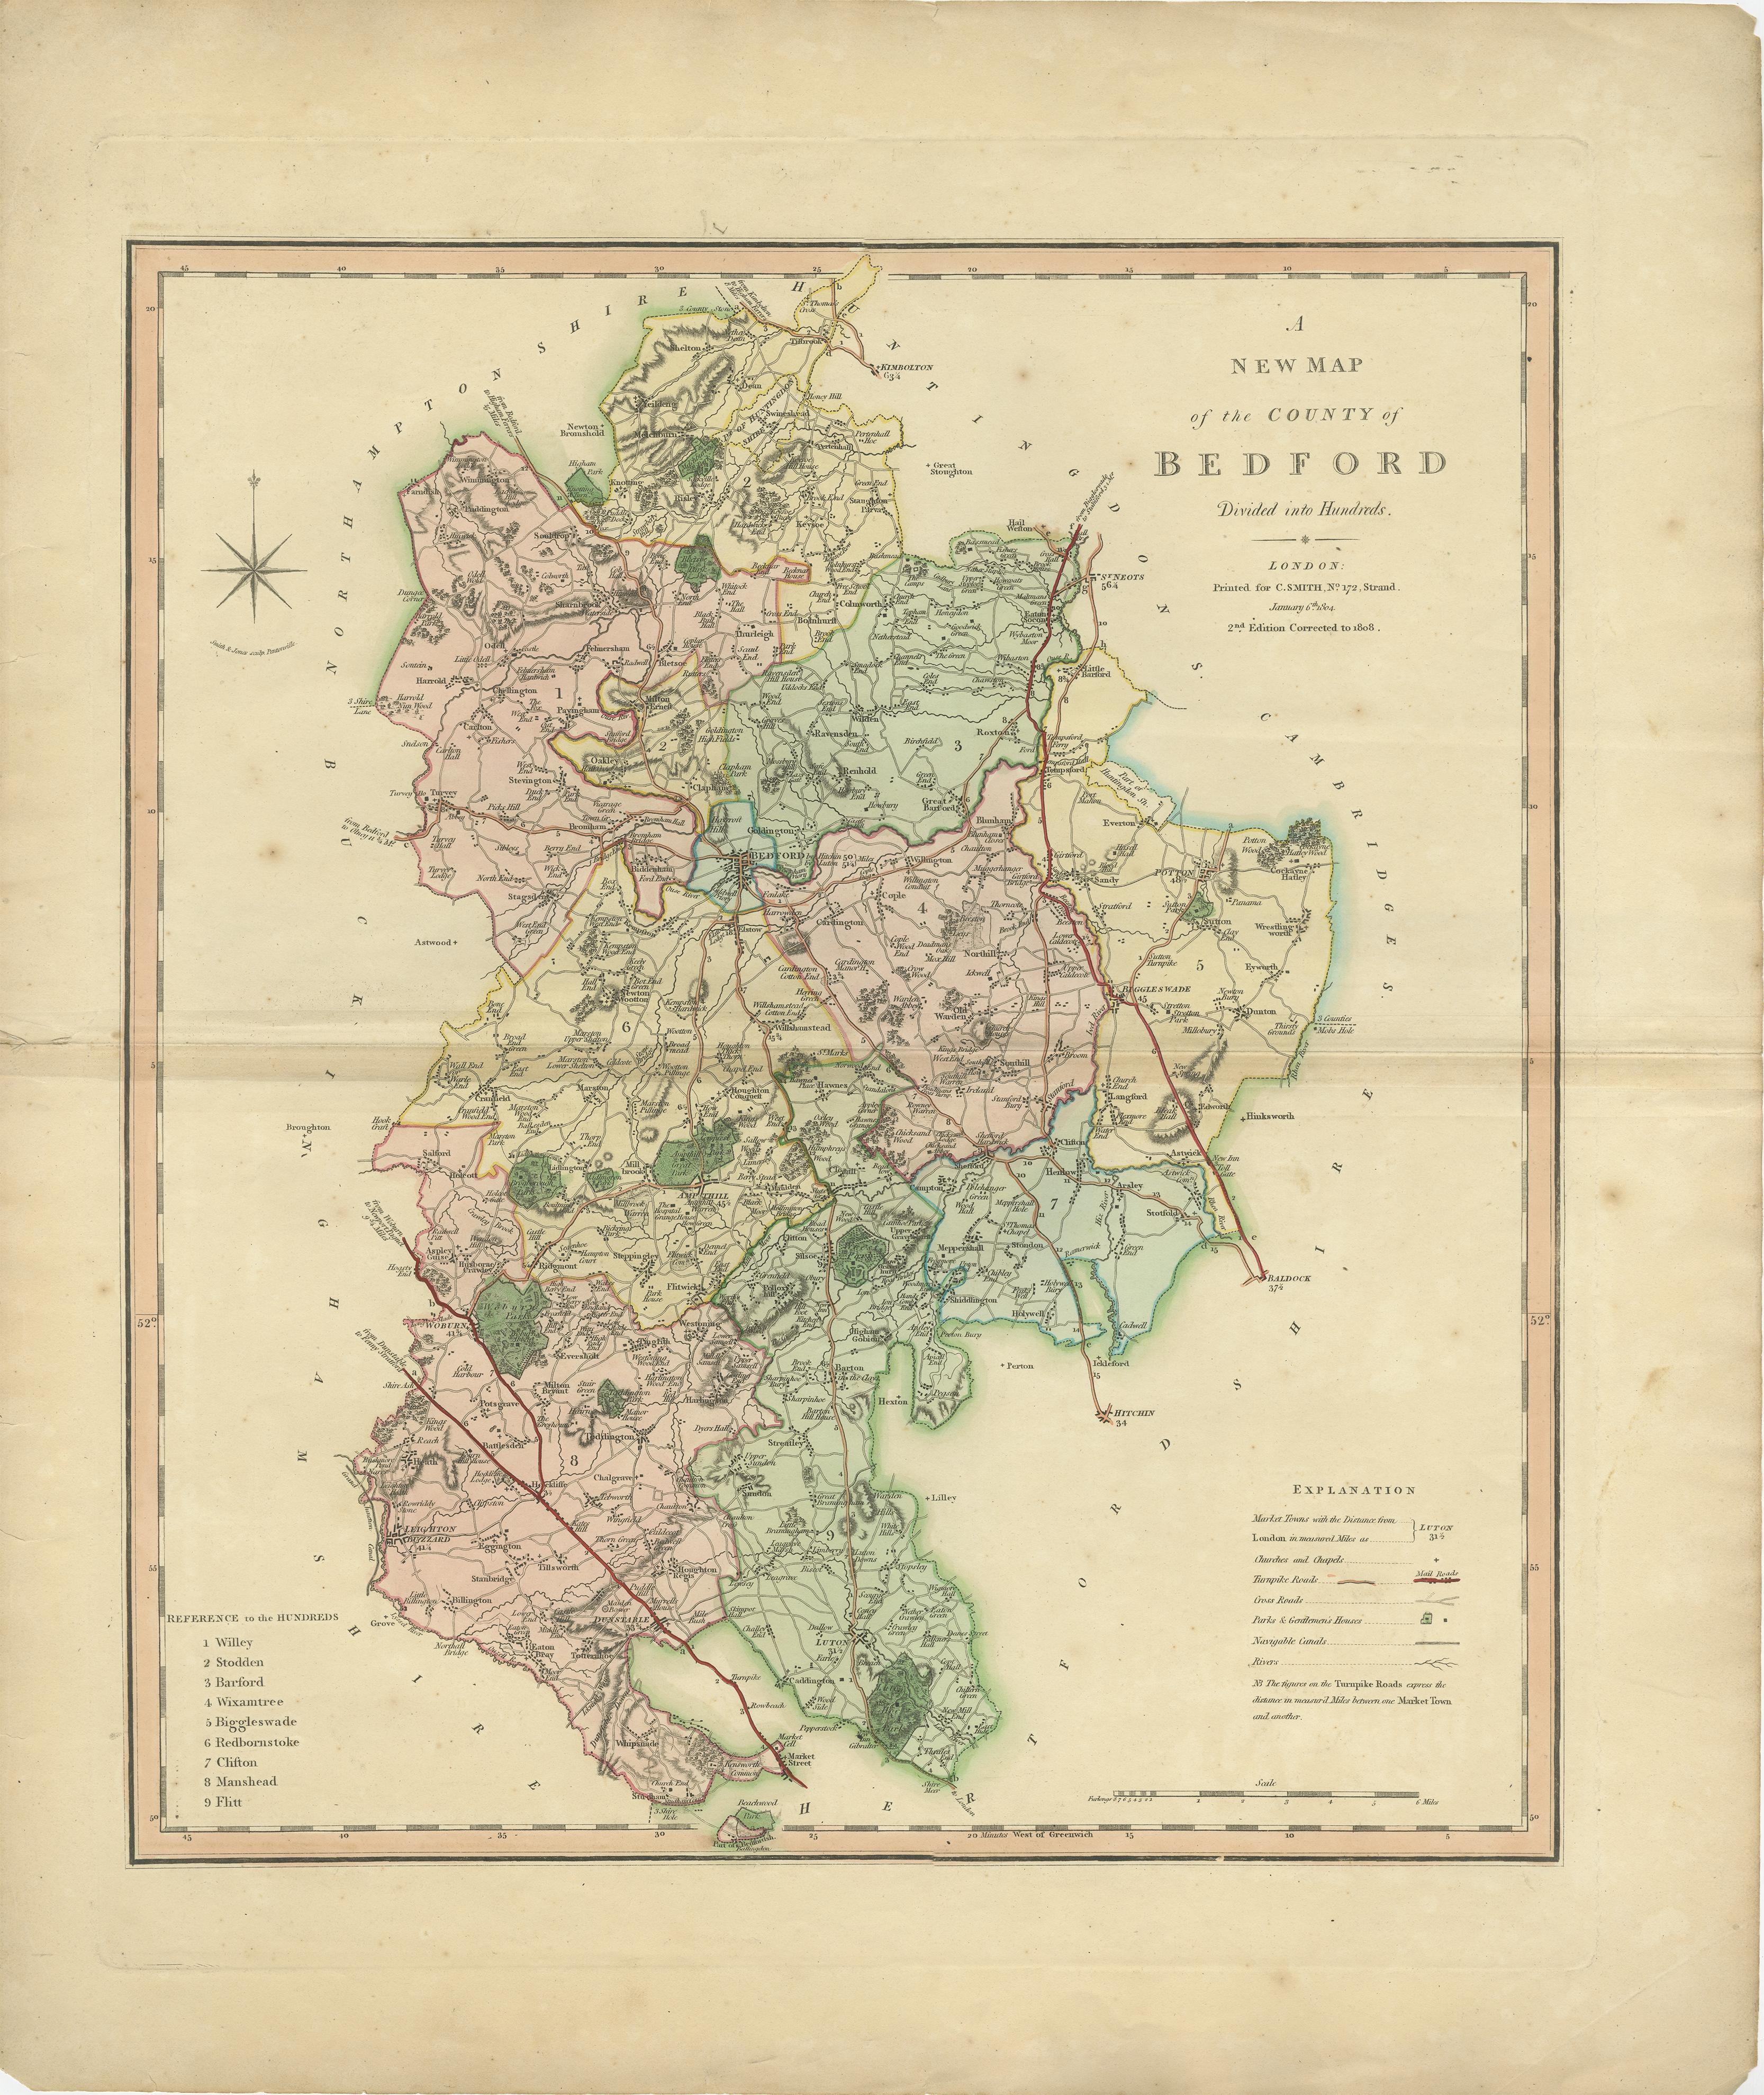 Carte ancienne du comté de Bedfordshire, publiée pour la première fois vers 1800. Les villages et les villes illustrés comprennent Bedford, Todington et Potton.

Charles Smith était un cartographe travaillant à Londres vers 1800. Ses cartes